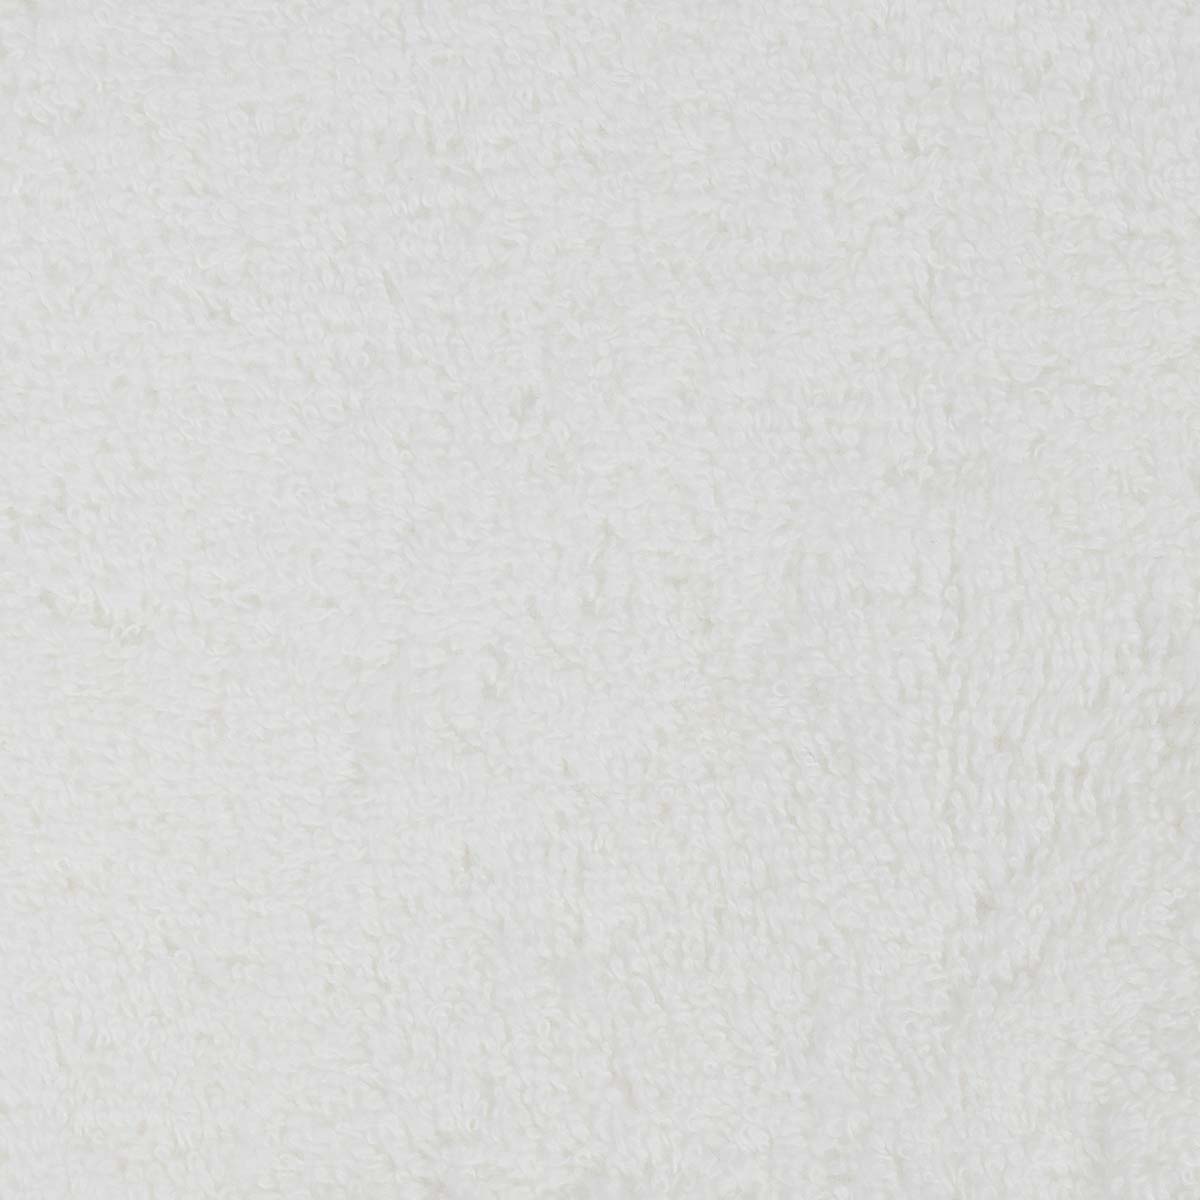 Полотенце махровое Lameirinho Aqua 30x50см, цвет белый Lameirinho 924842/blanco/030050 924842/blanco/030050 - фото 3